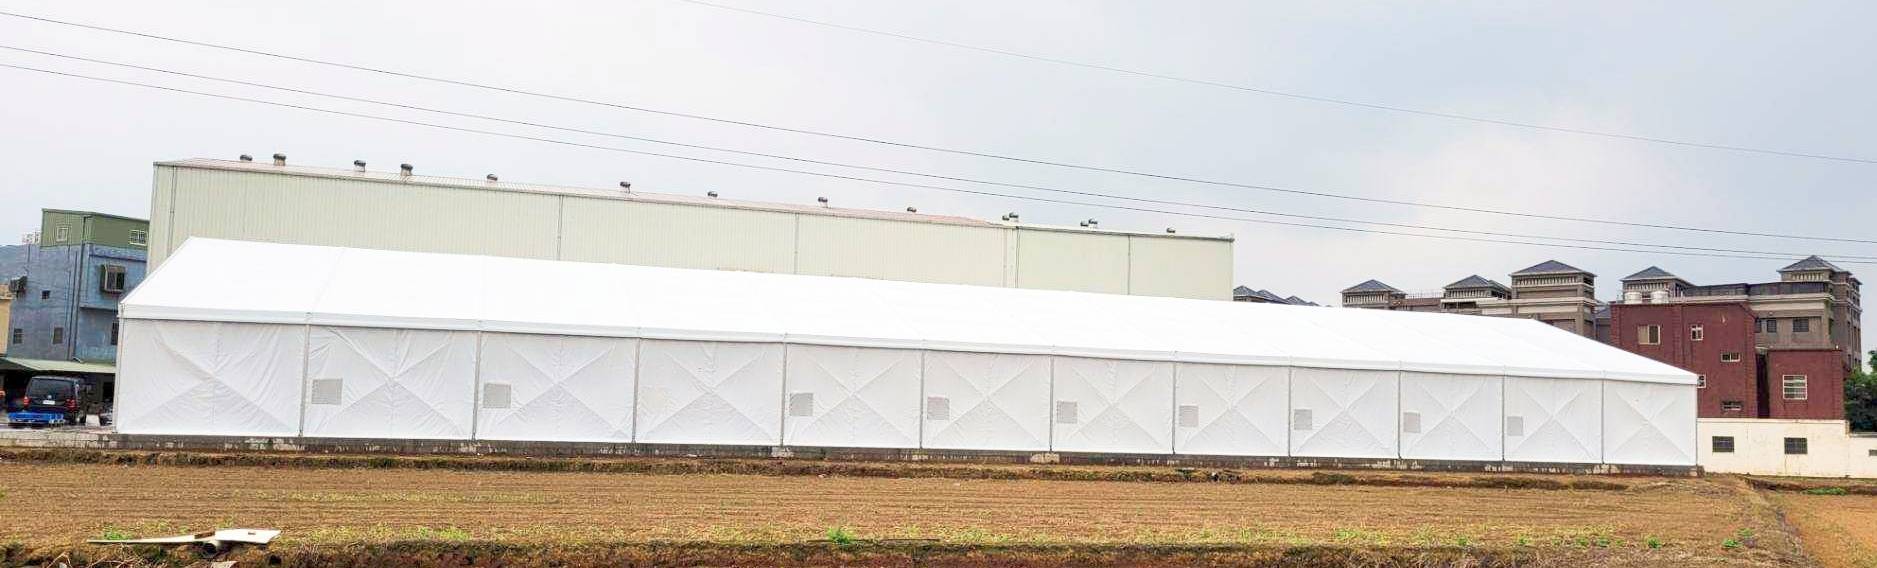 大きな構造のテント倉庫は、使用感が美しく、操作性が高く、換気が良く、安全です。